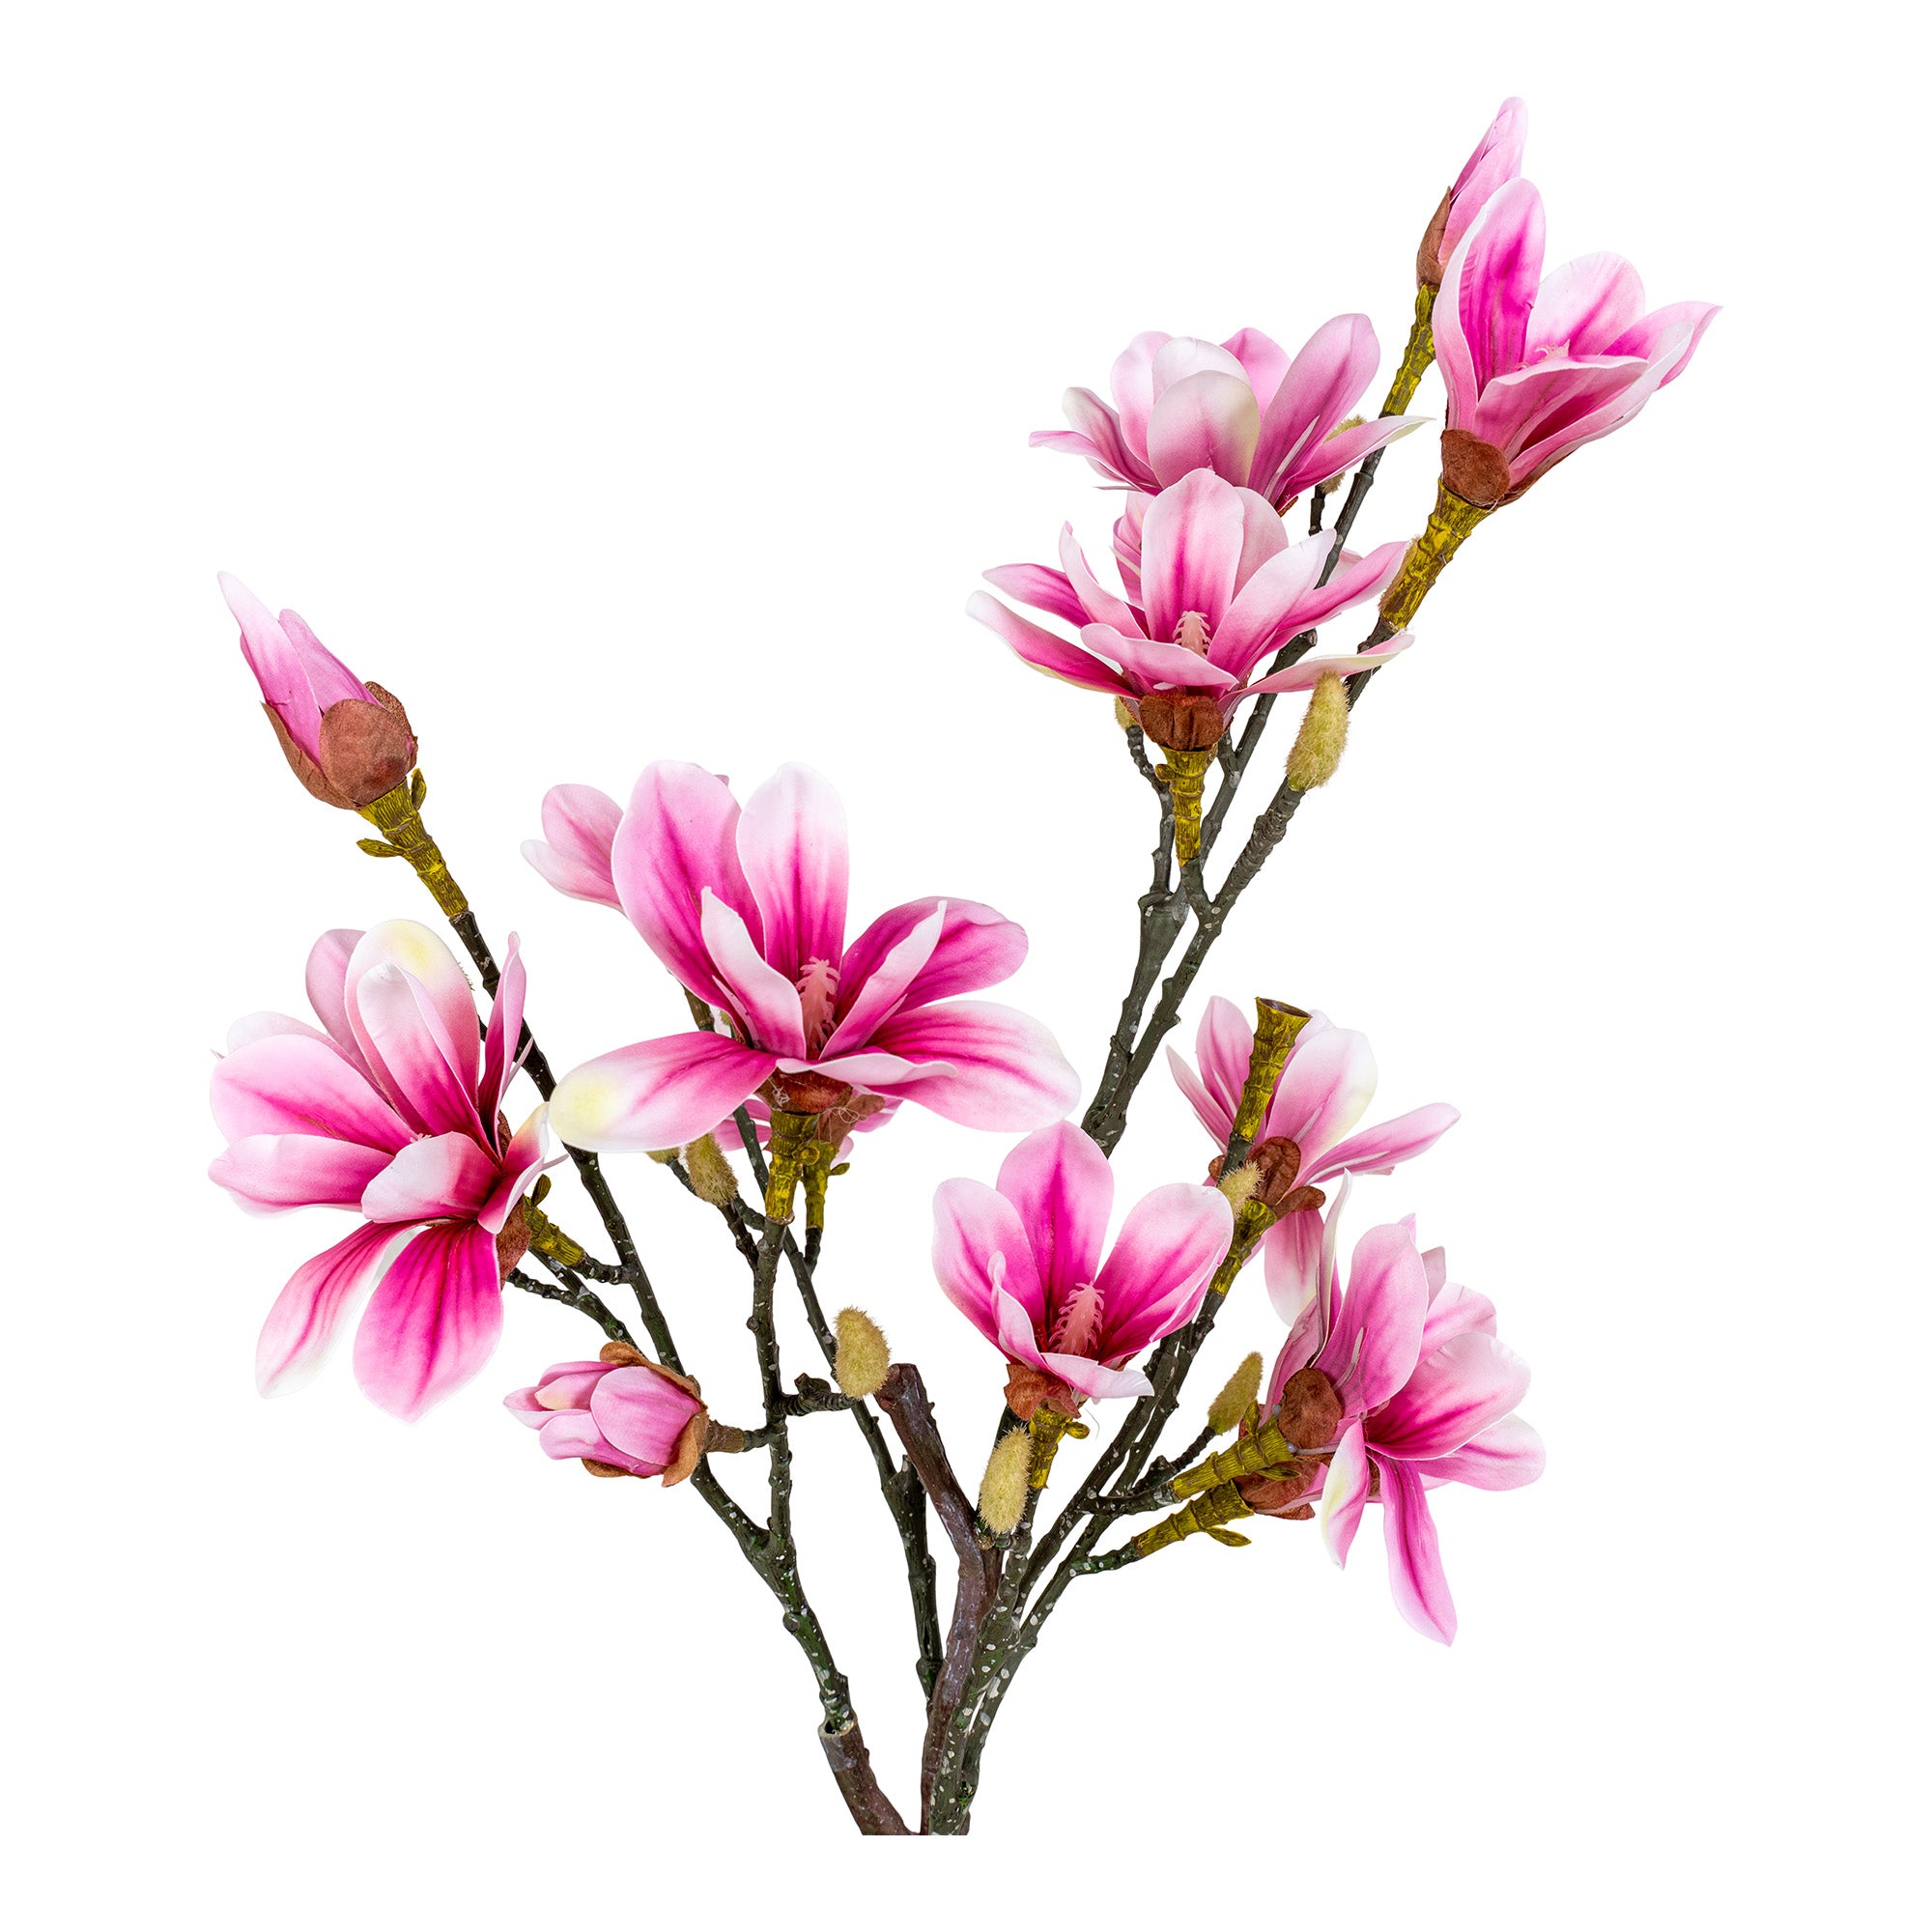 Magnoliatræ - Kunstig Plante, Rosa, 75 Cm ⎮ 5713917022601 ⎮ 9501130 